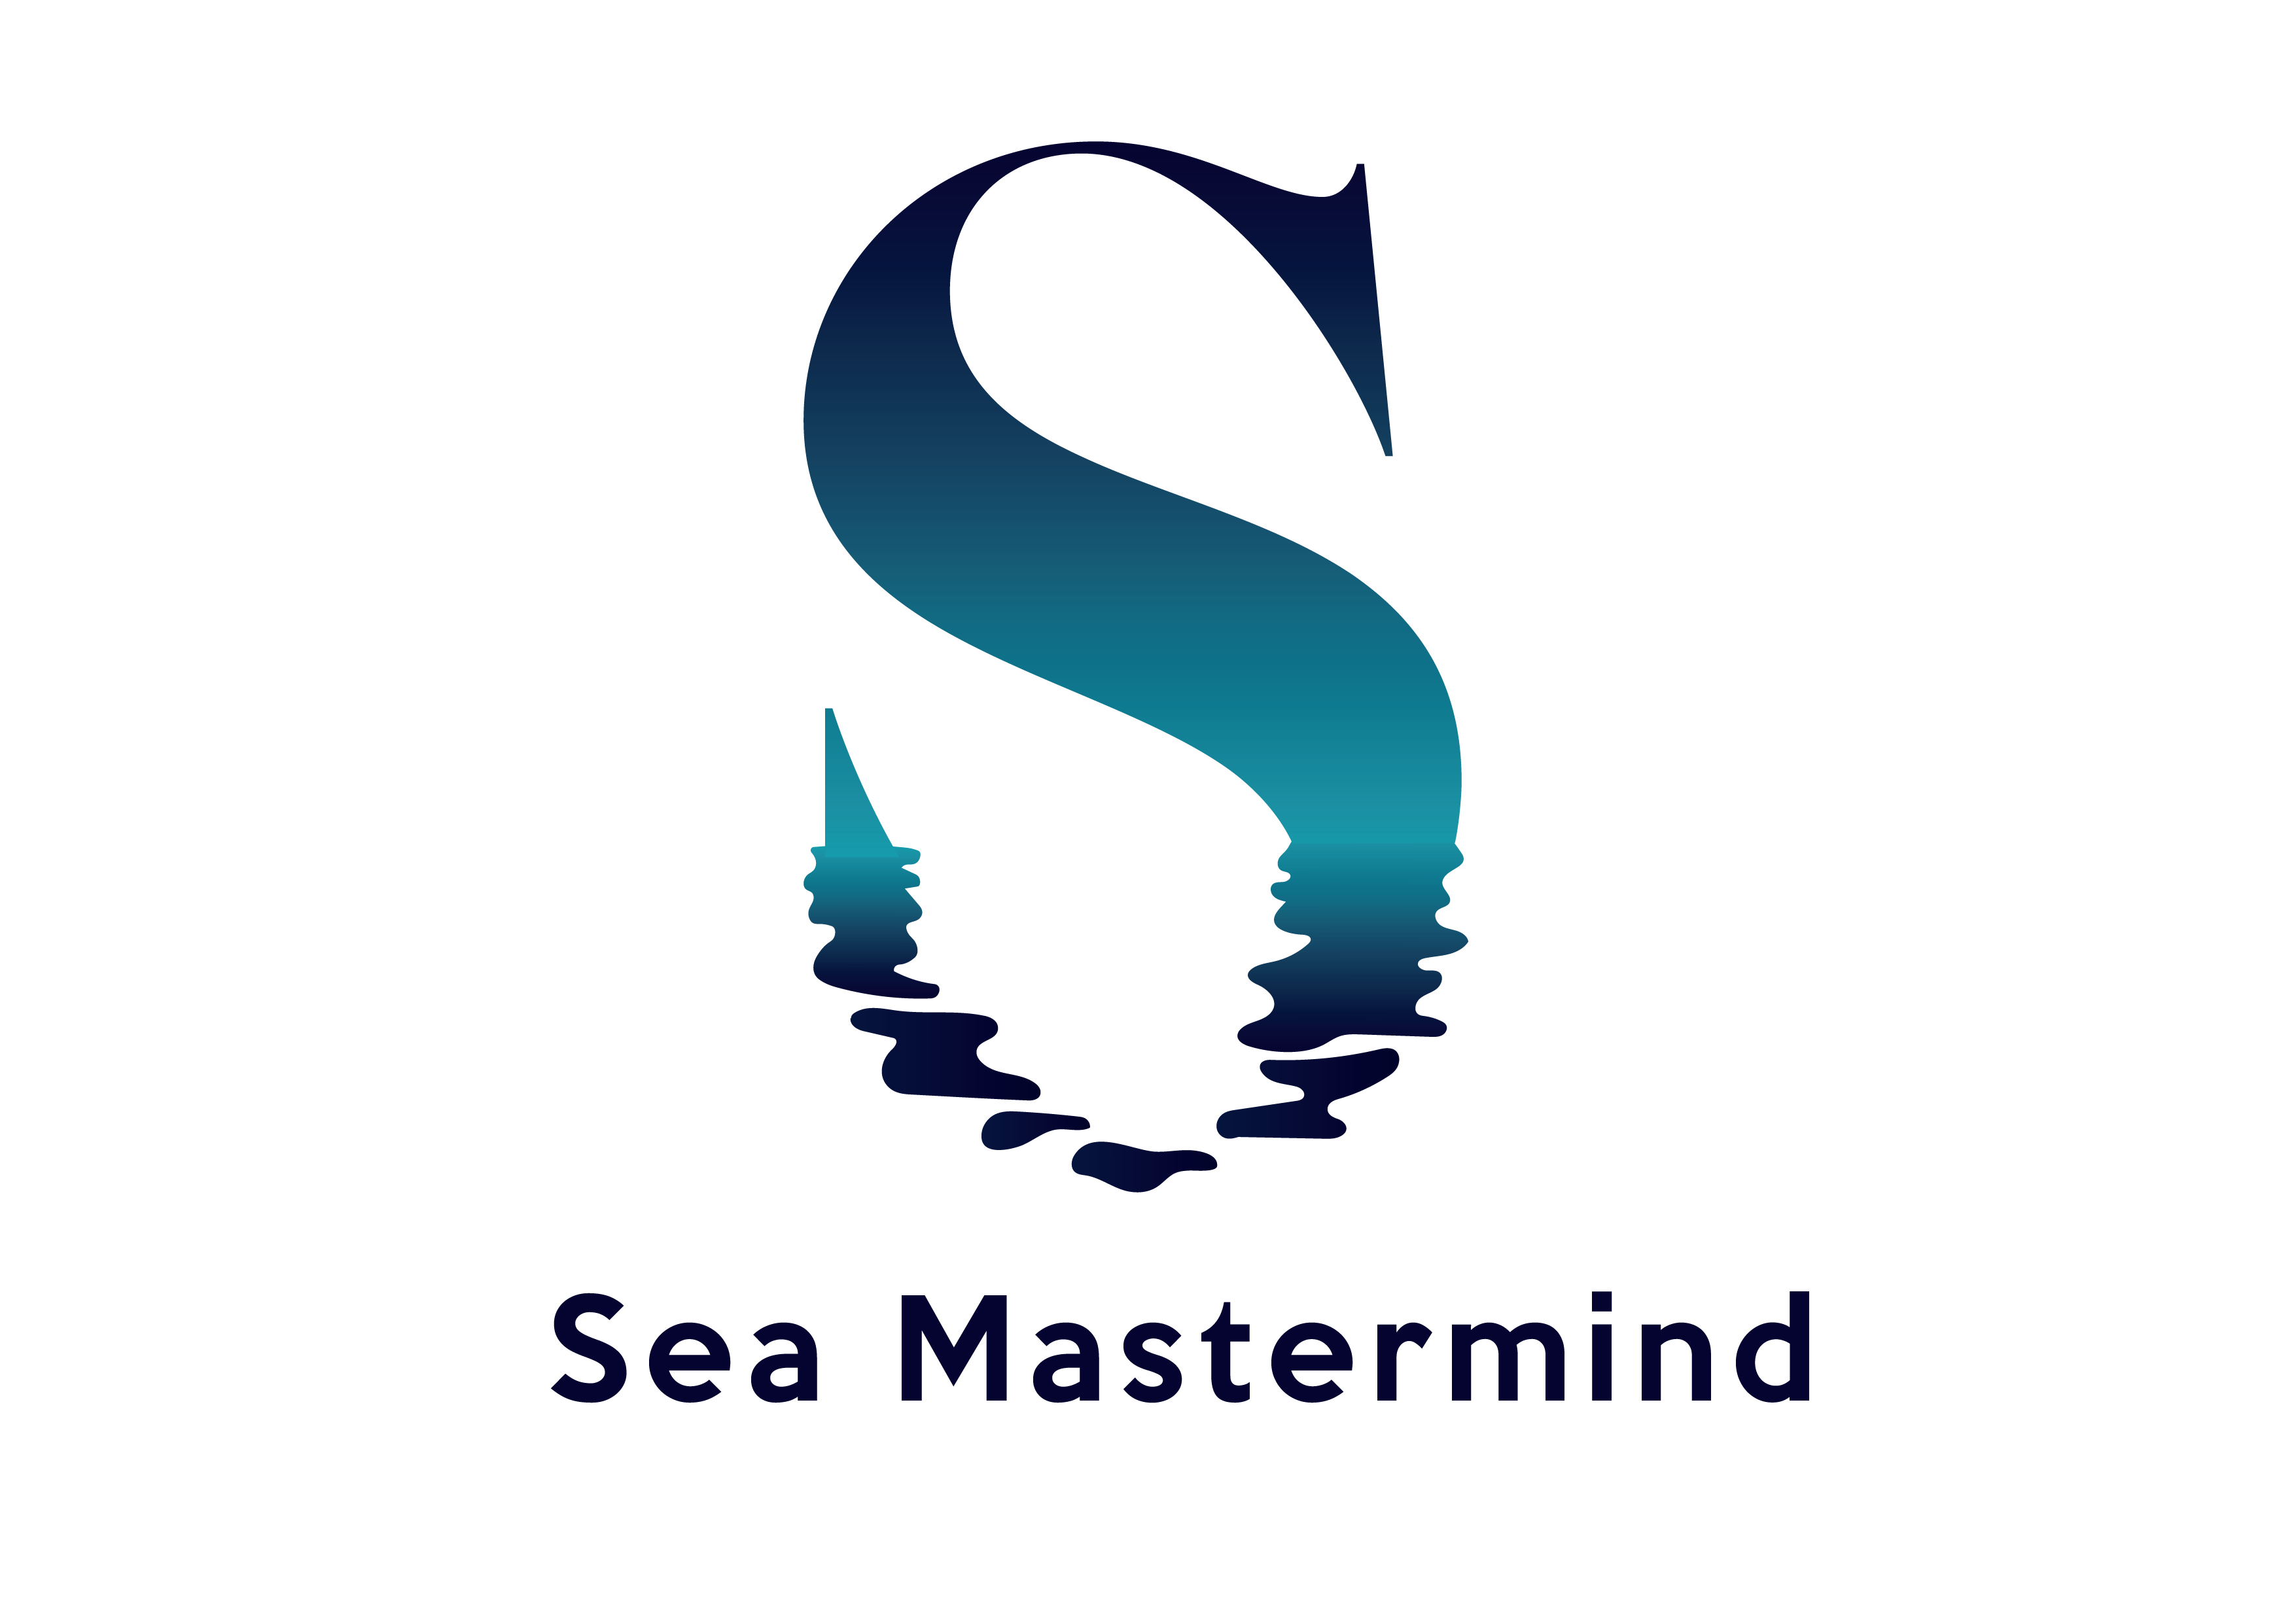 Sea Mastermind